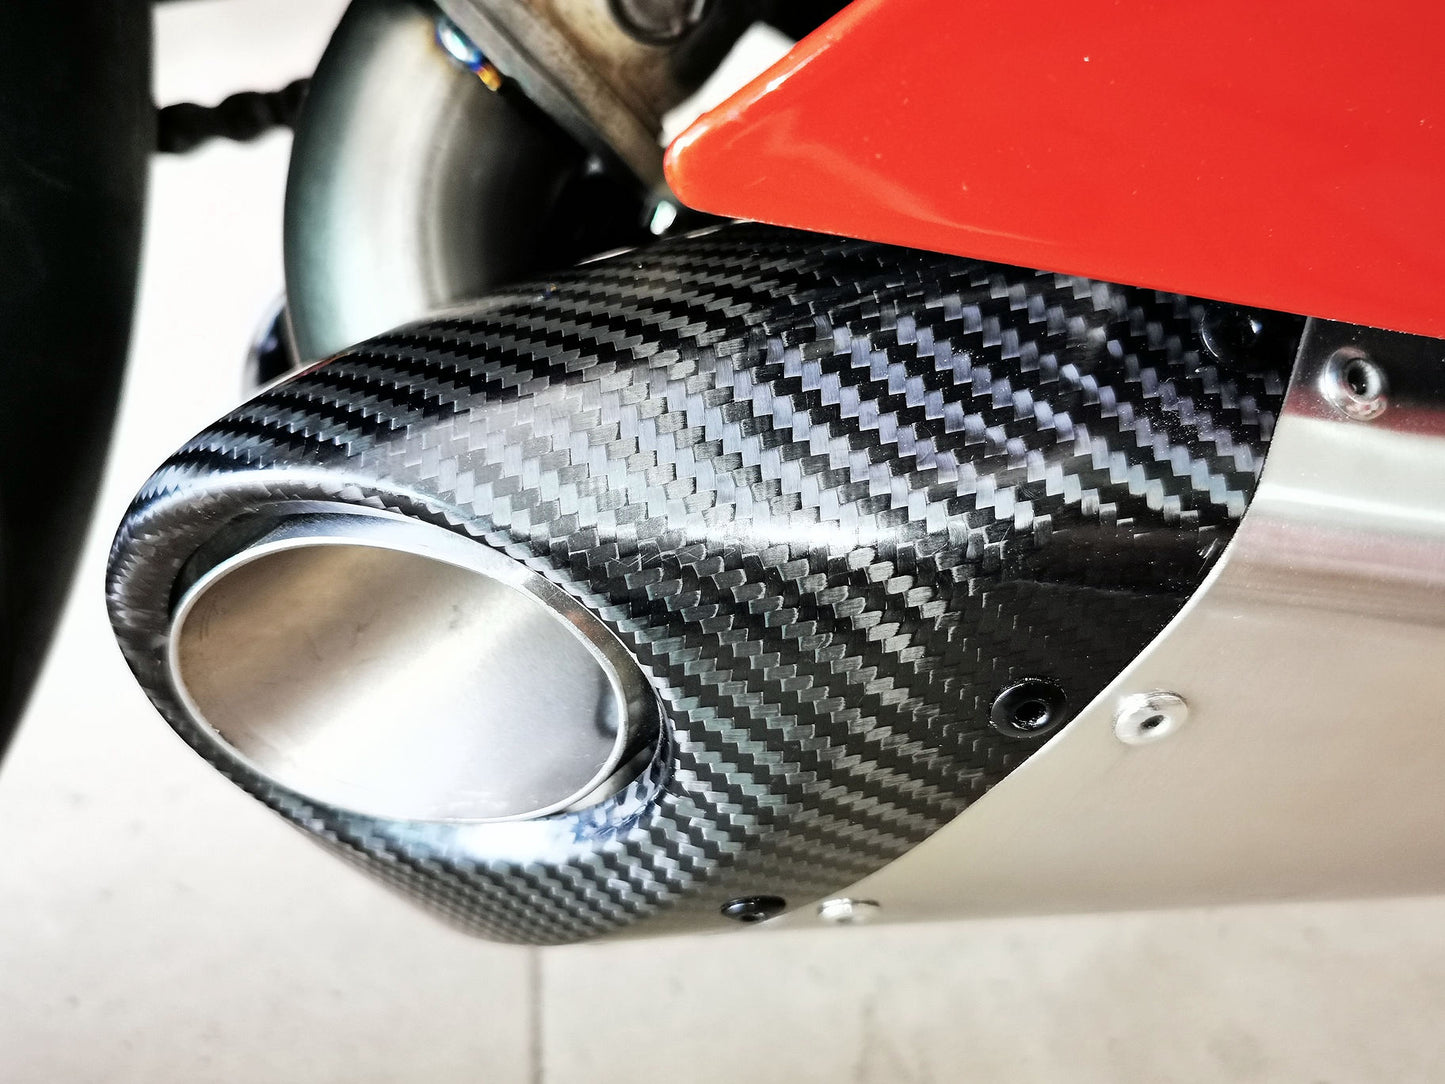 Ducati Panigale 899, 1199, 1199R Titanium Muffler Low Mount Slip-On 2012-15